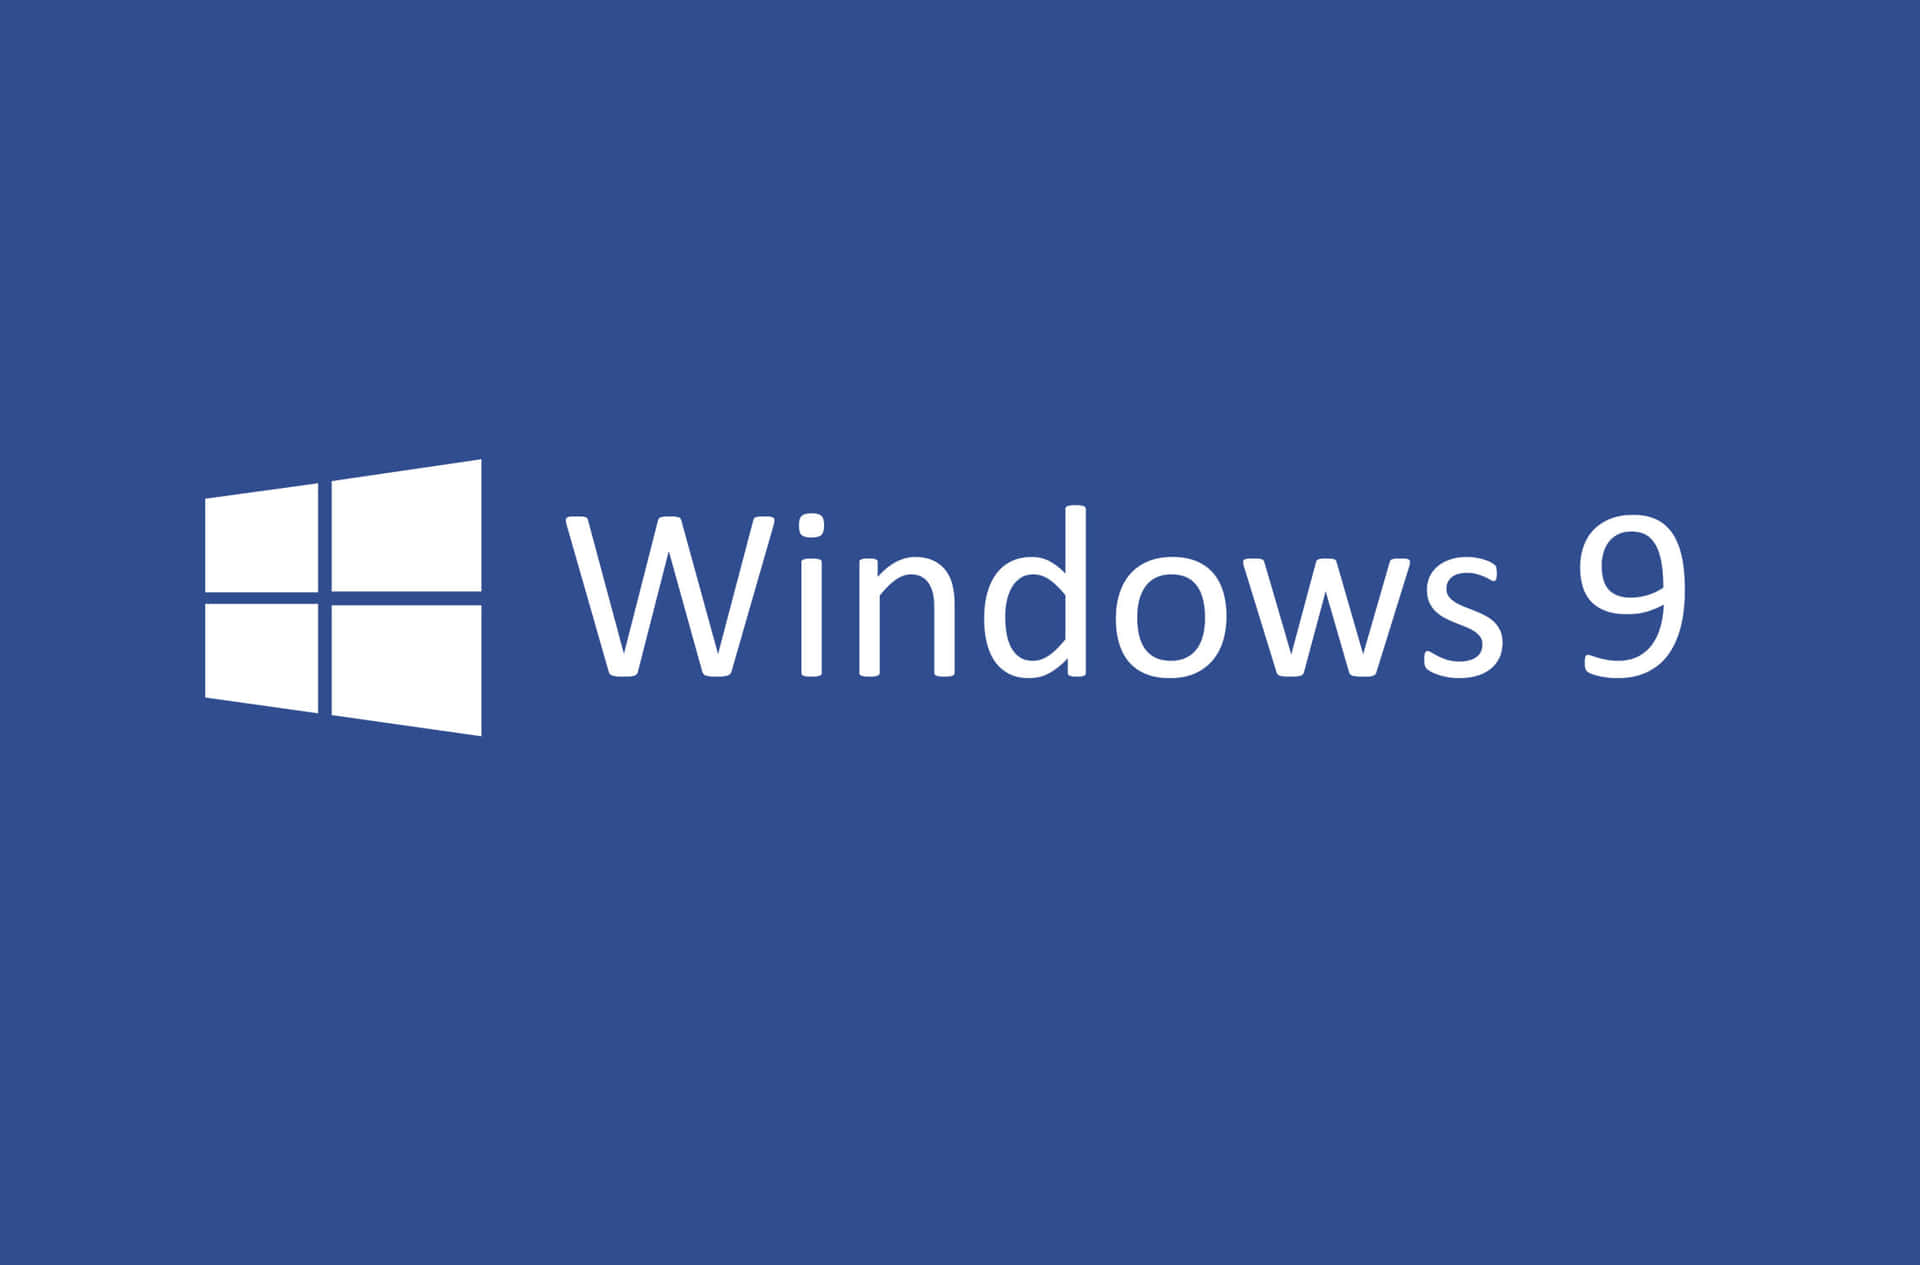 Holensie Das Beste Aus Microsoft Windows Heraus.